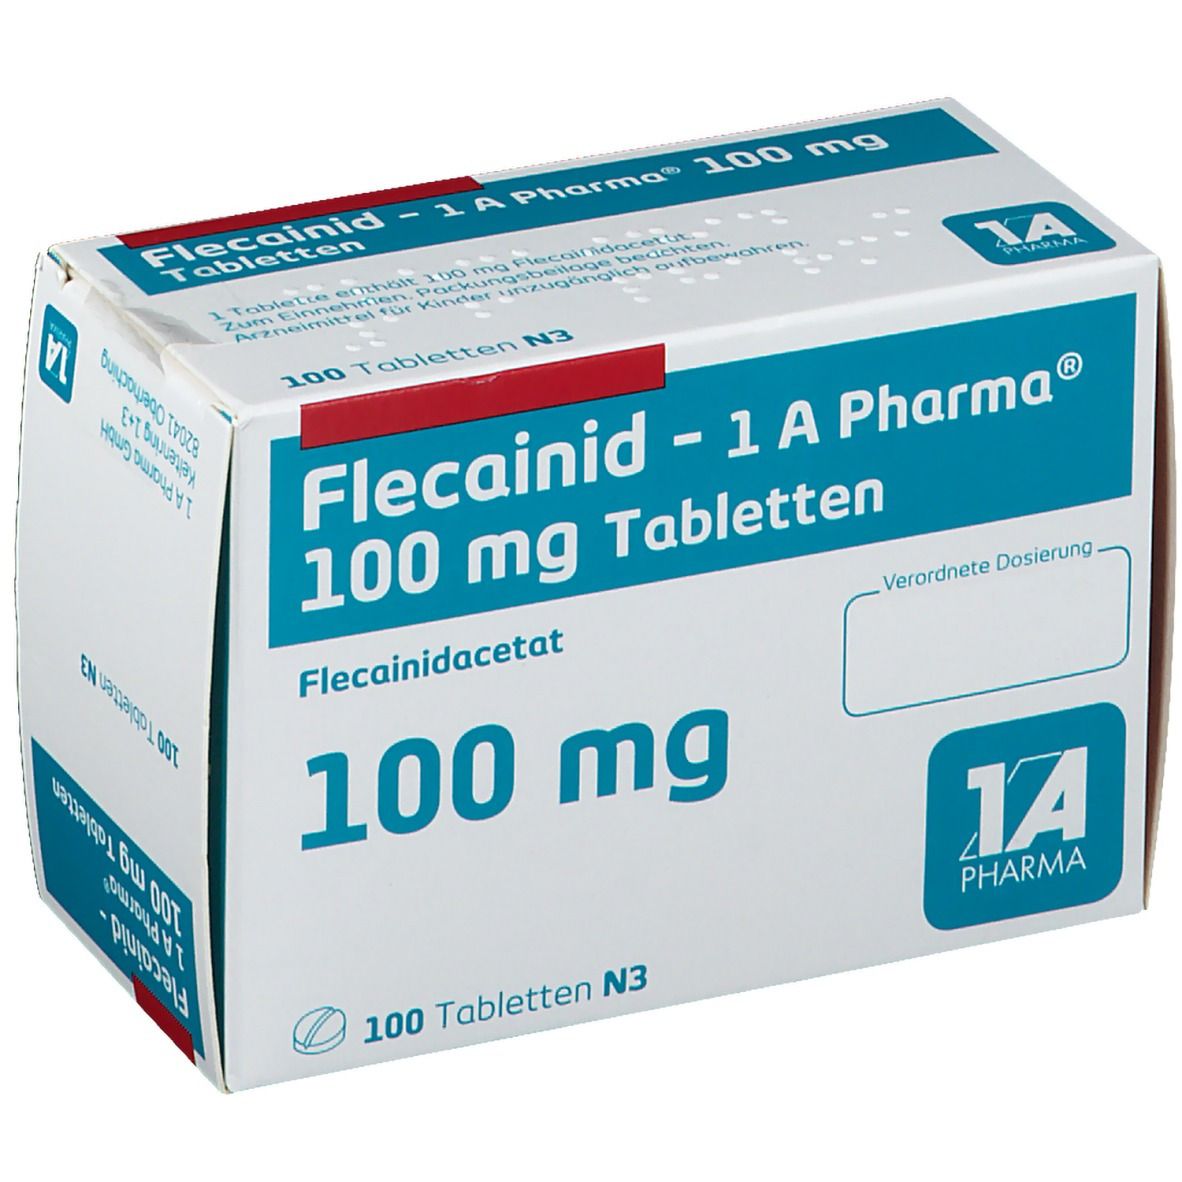 Flecainid 1A Pharma® 100Mg